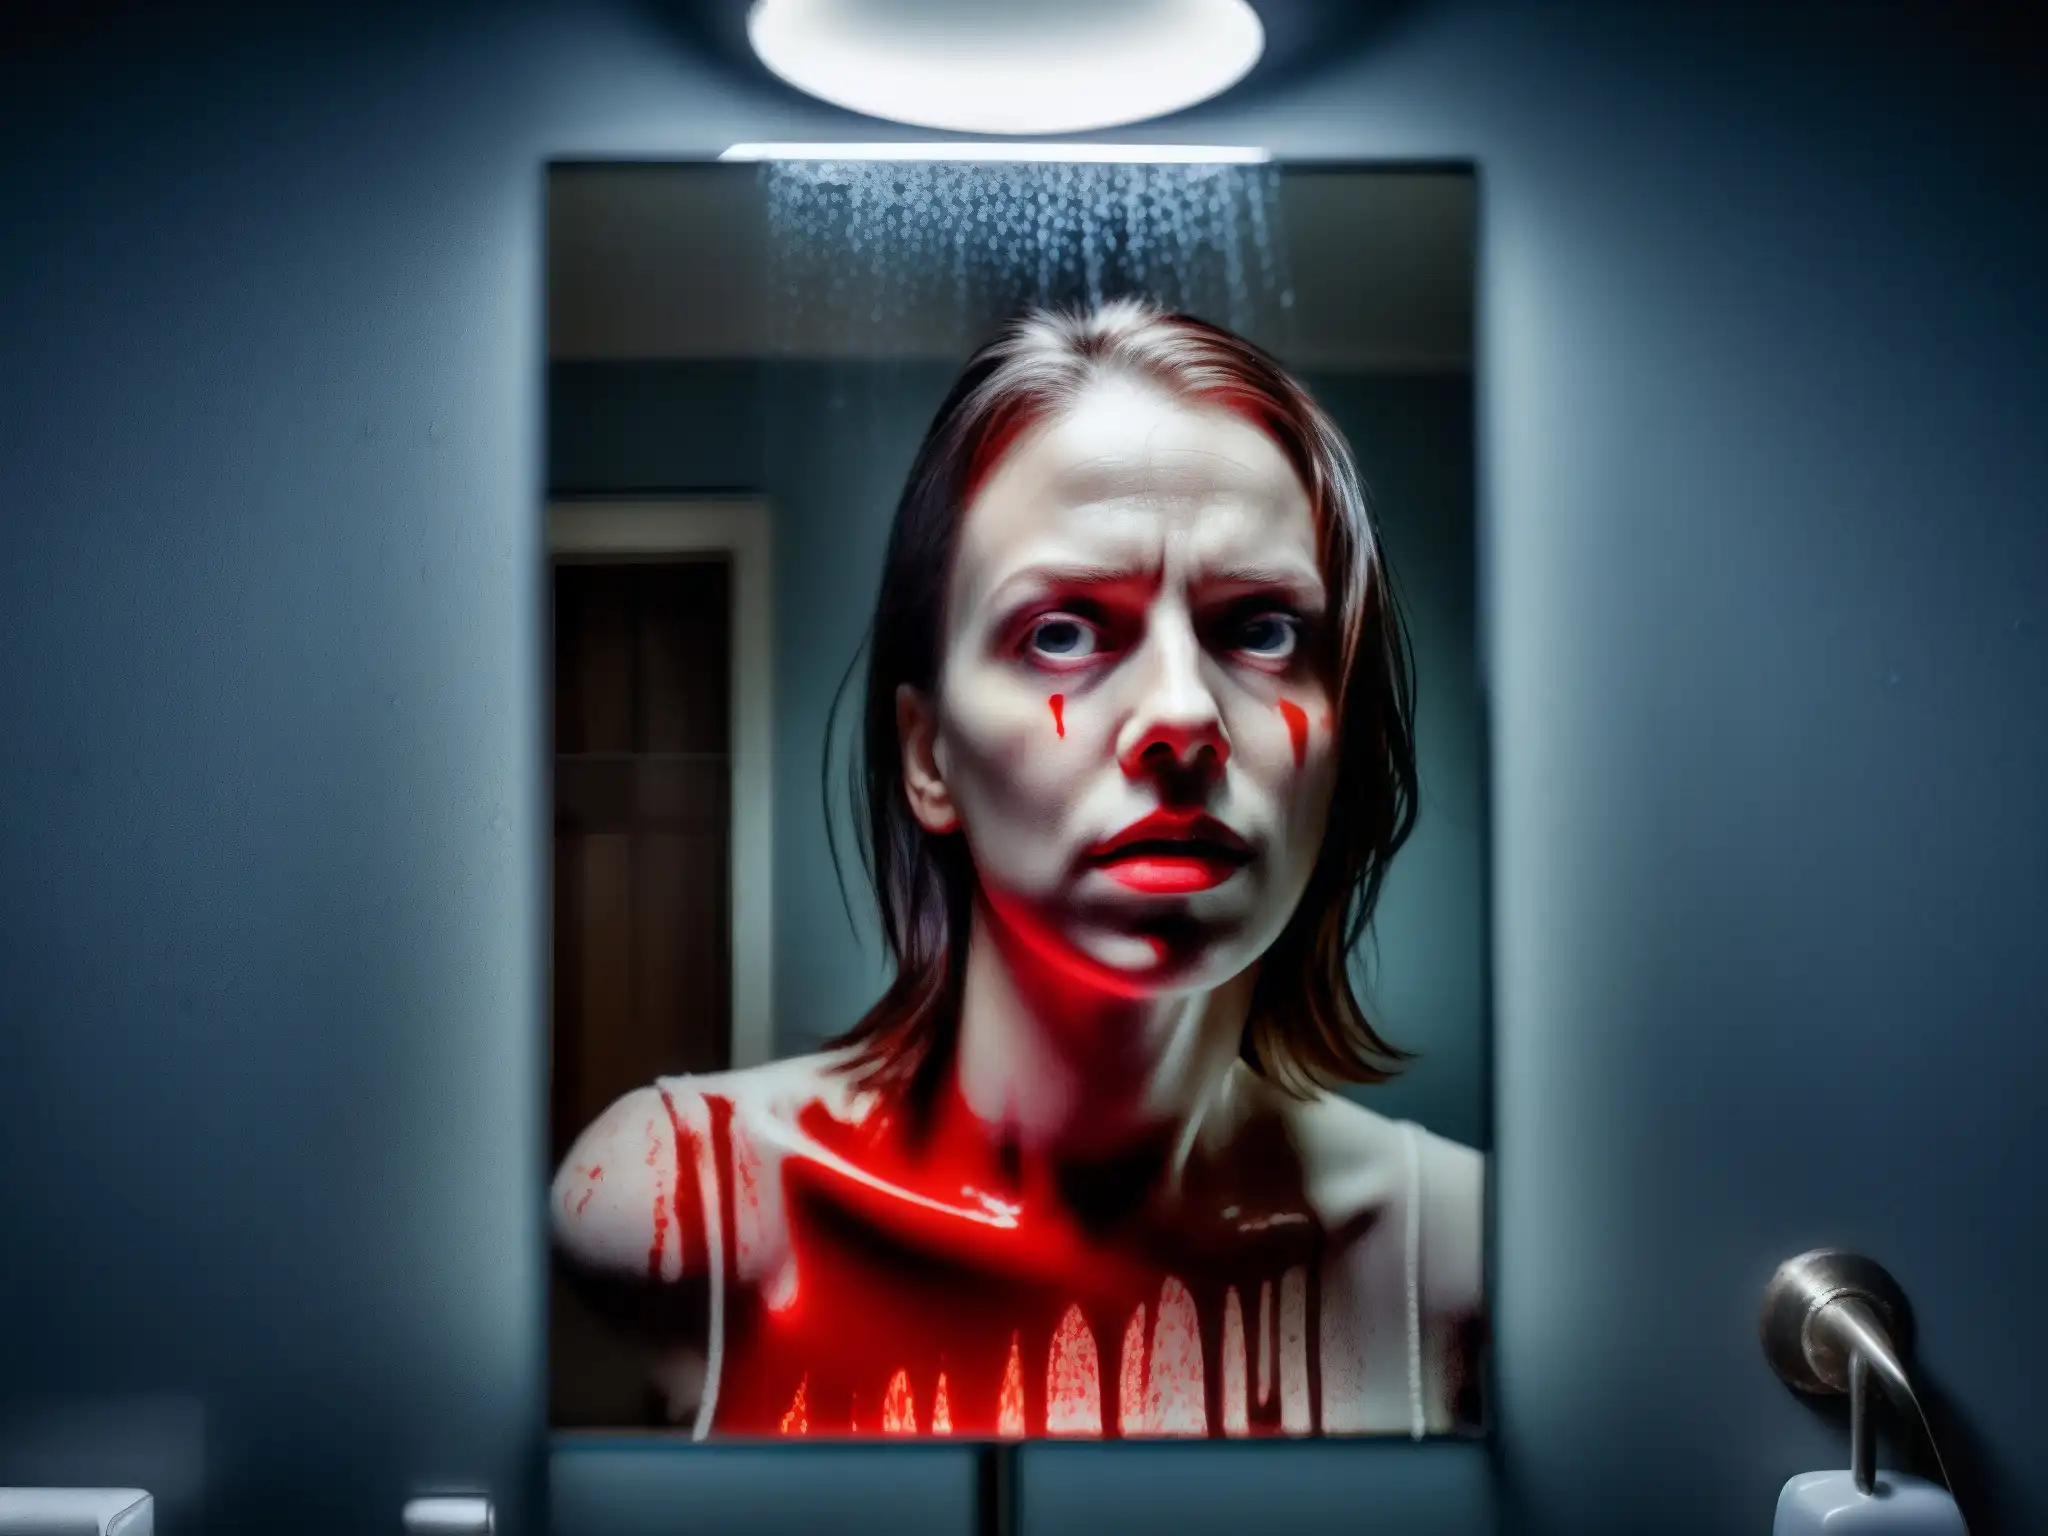 En la tenue luz del baño, el espejo empañado revela la inquietante figura de Bloody Mary, evocando temor y fascinación